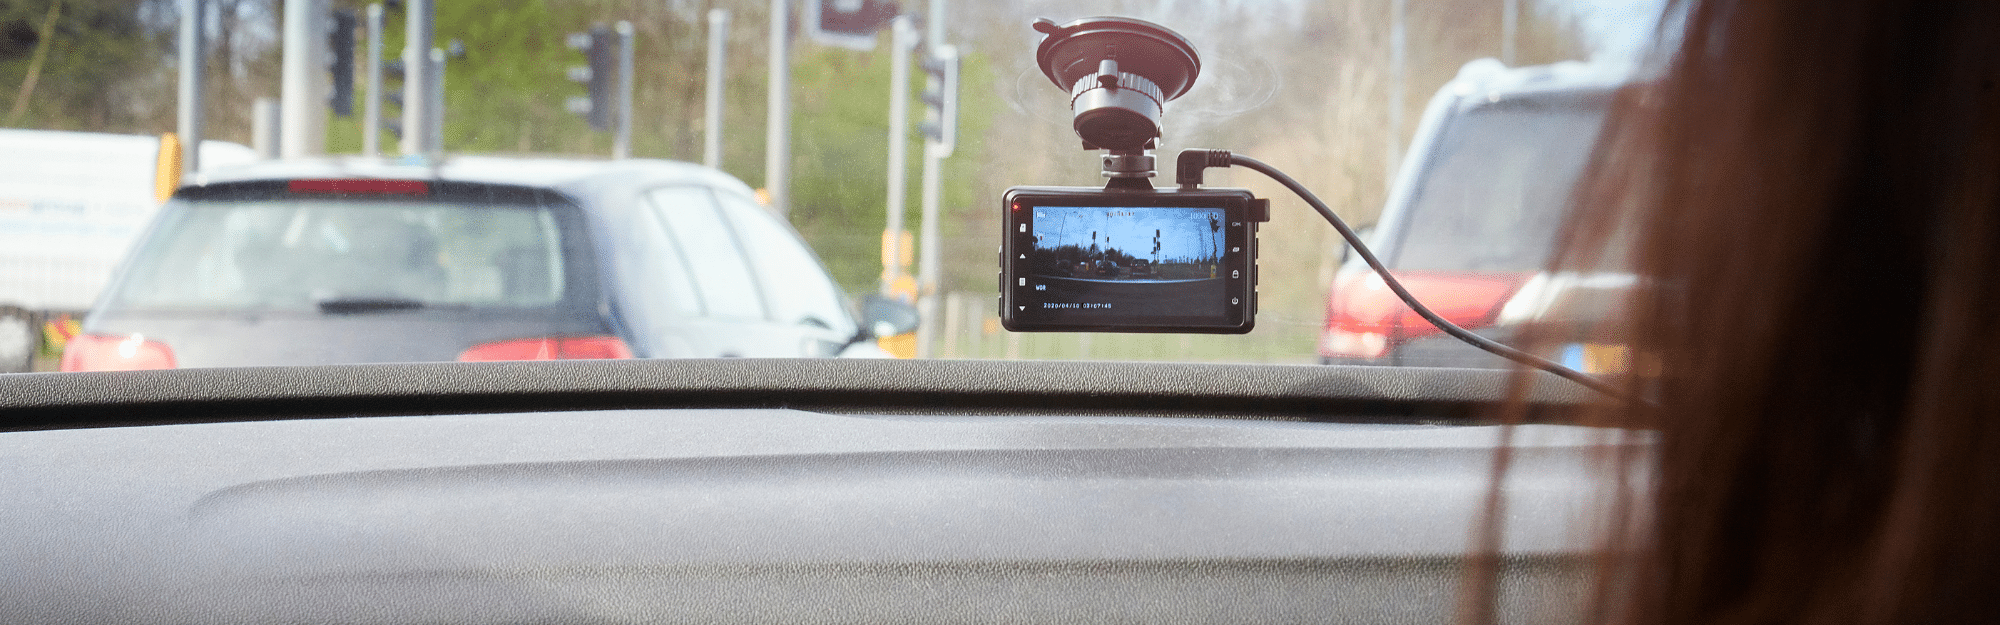 Dashcam / caméra embarquée tactile pour voiture - preuve vidéo en cas  d'accident